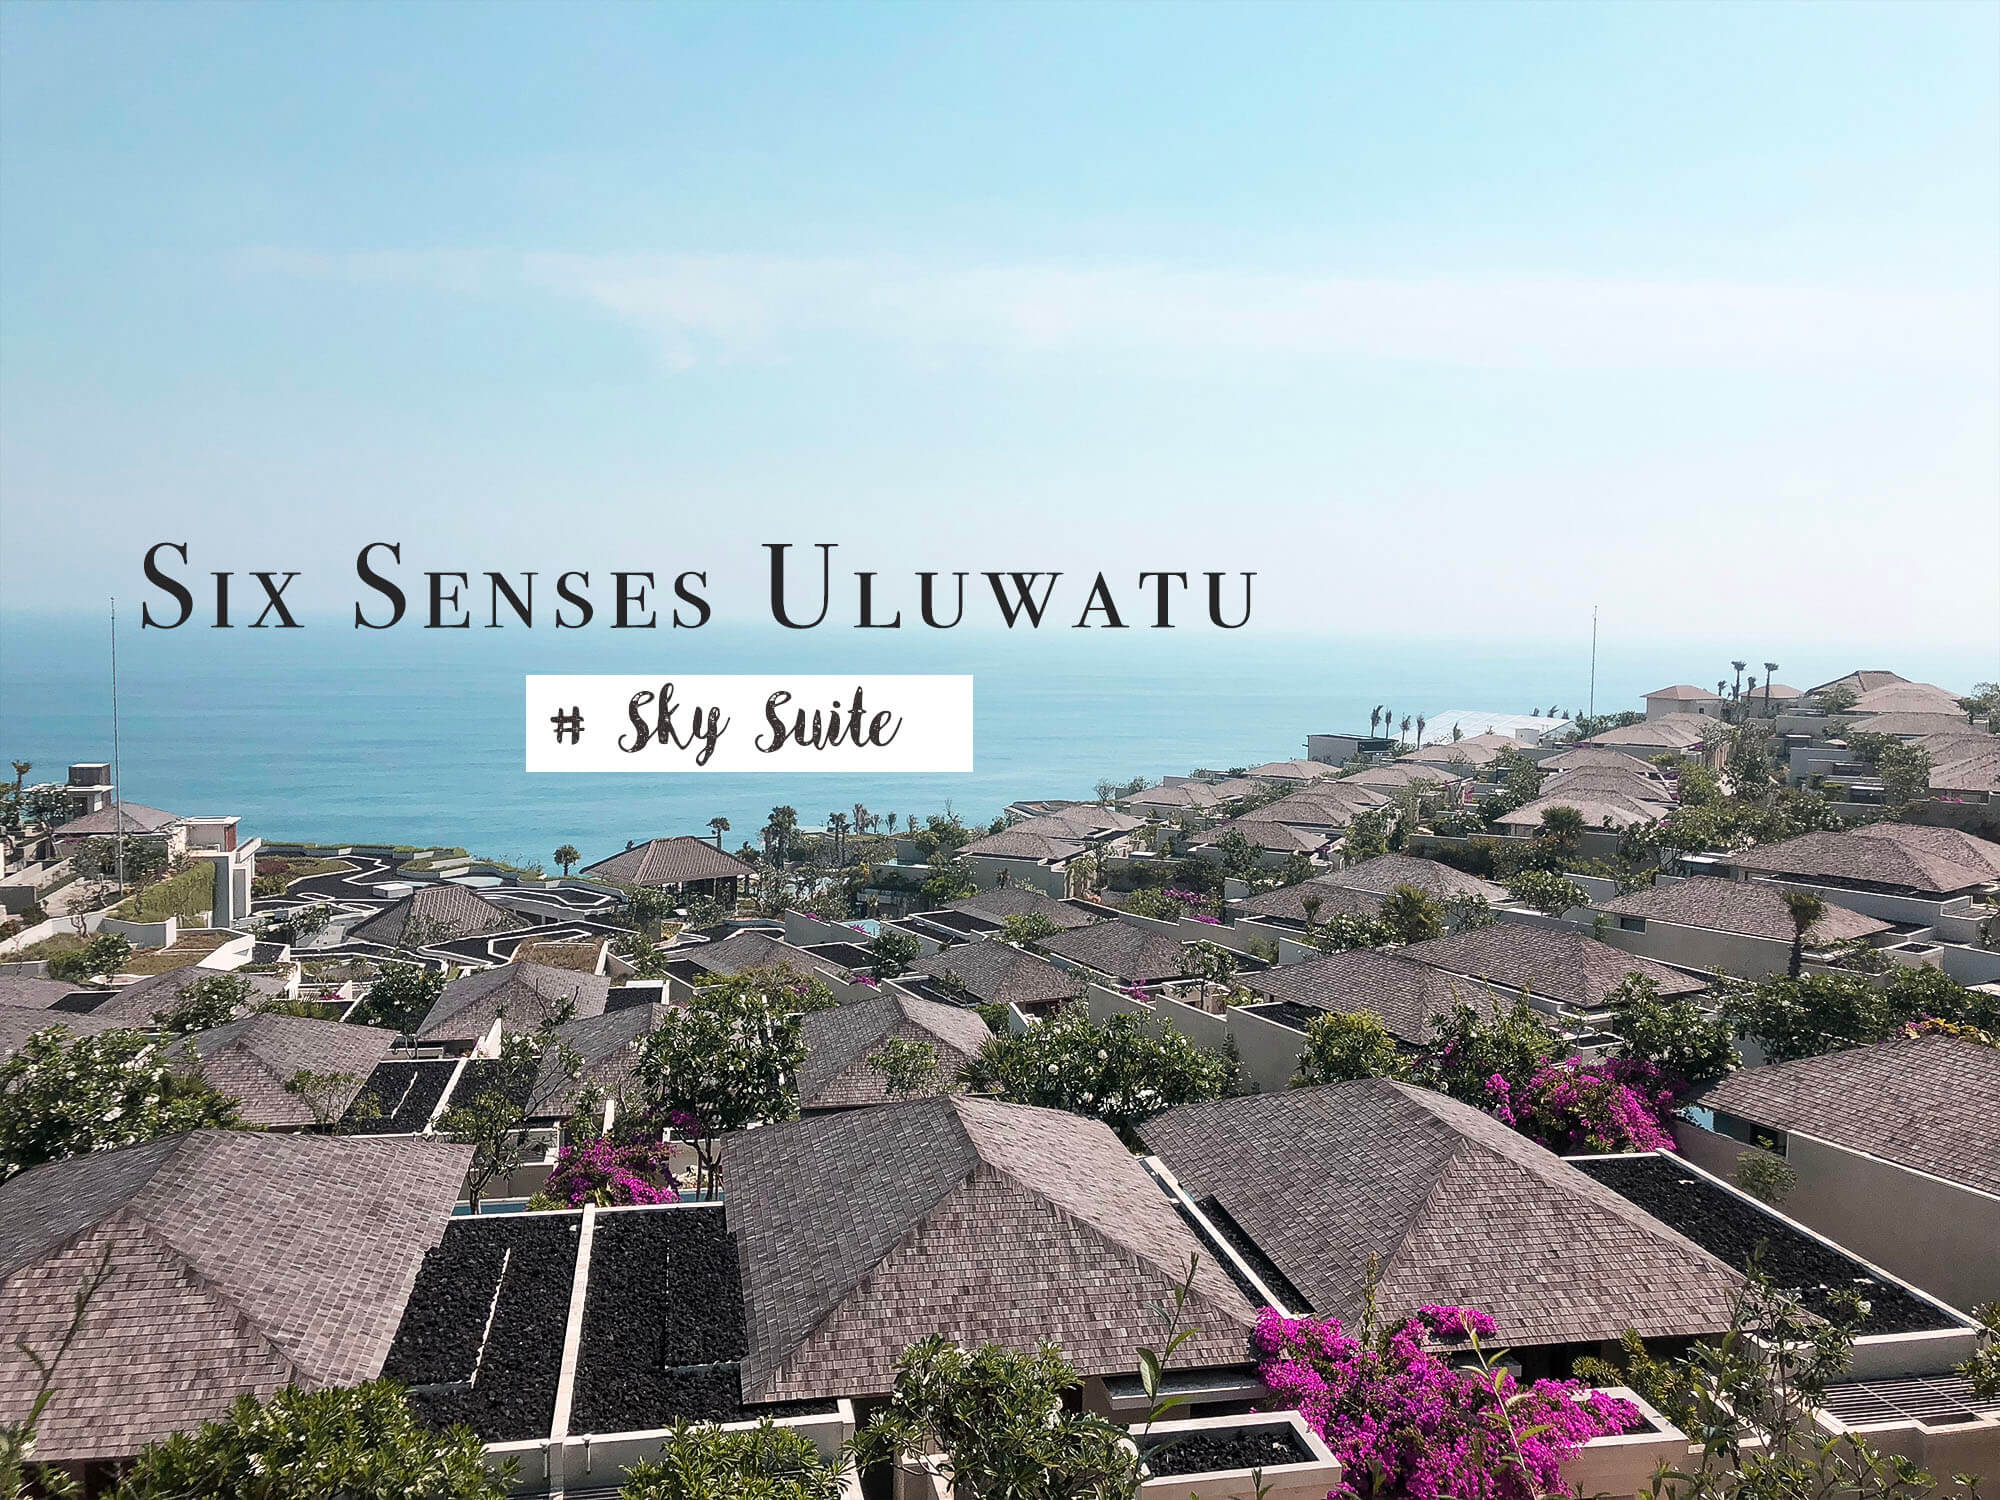 峇里島Villa｜Six Senses Uluwatu六感渡假村飯店Sky Suite天空套房住房體驗